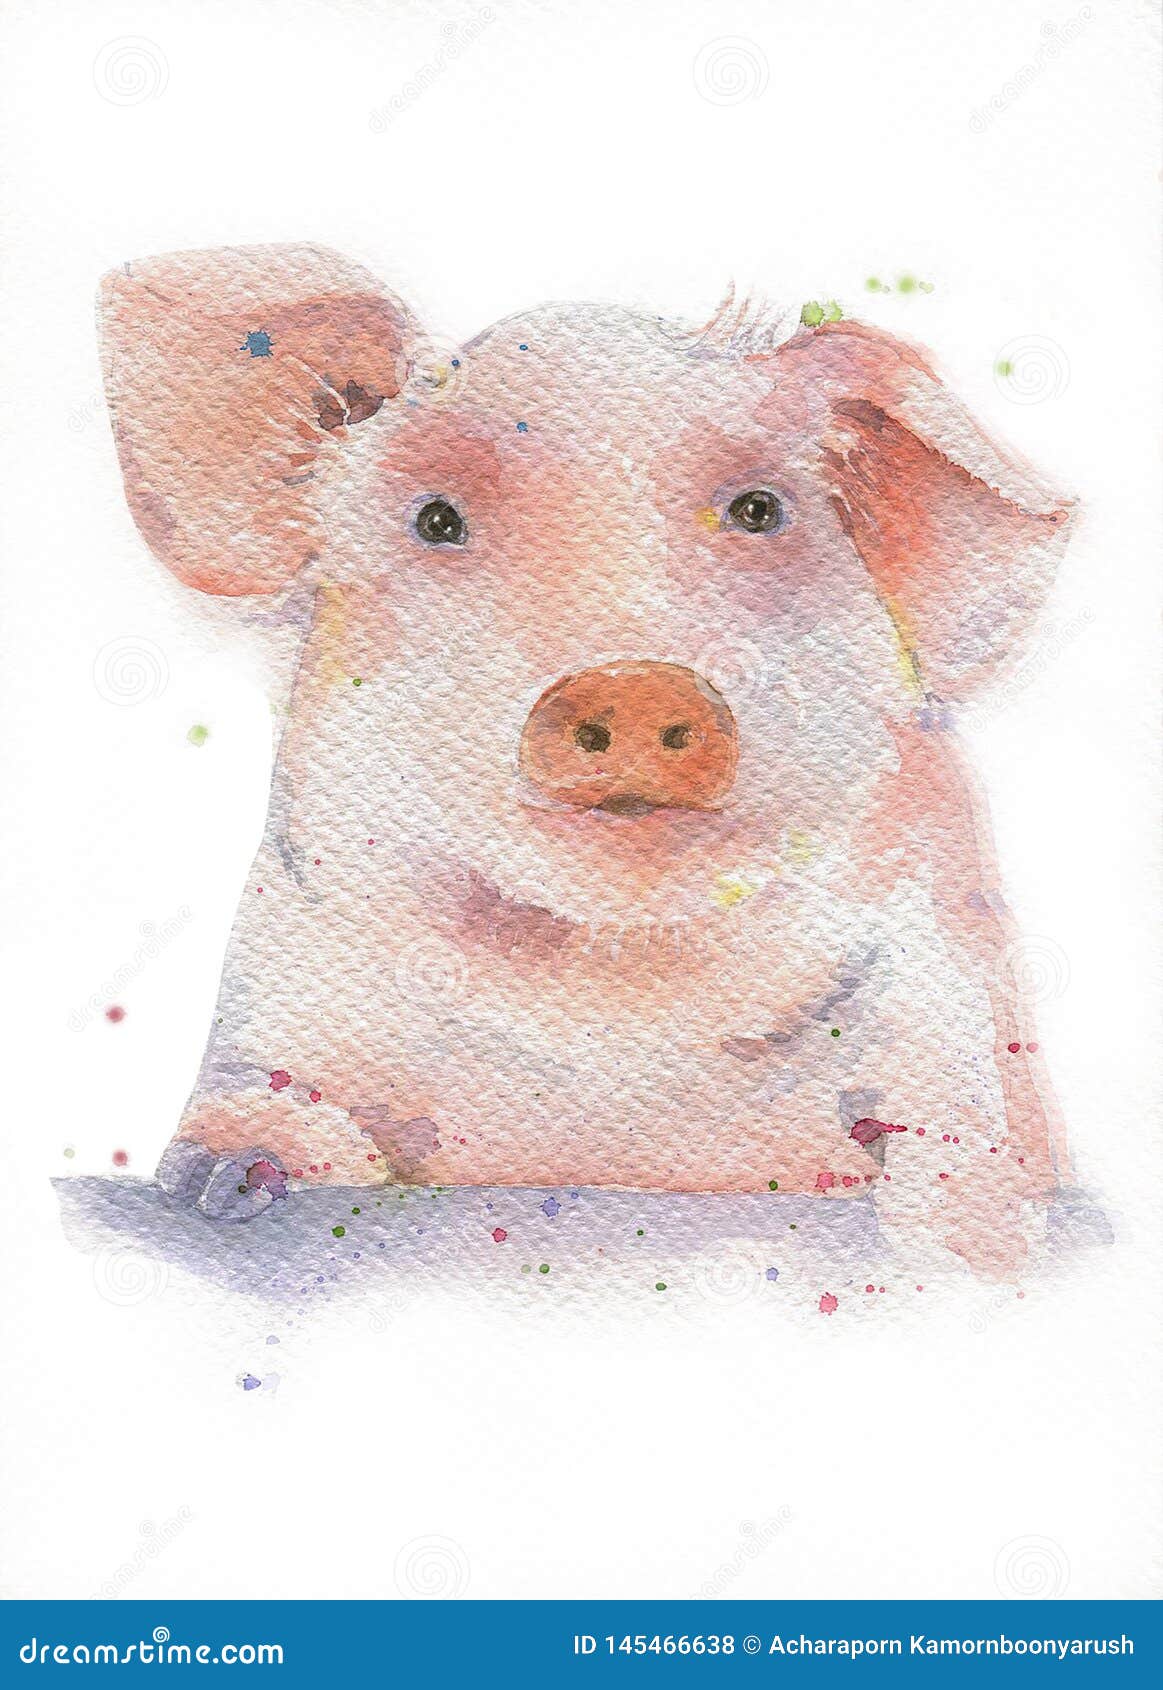 vb：一颗凌乱的猪头 - 堆糖，美图壁纸兴趣社区